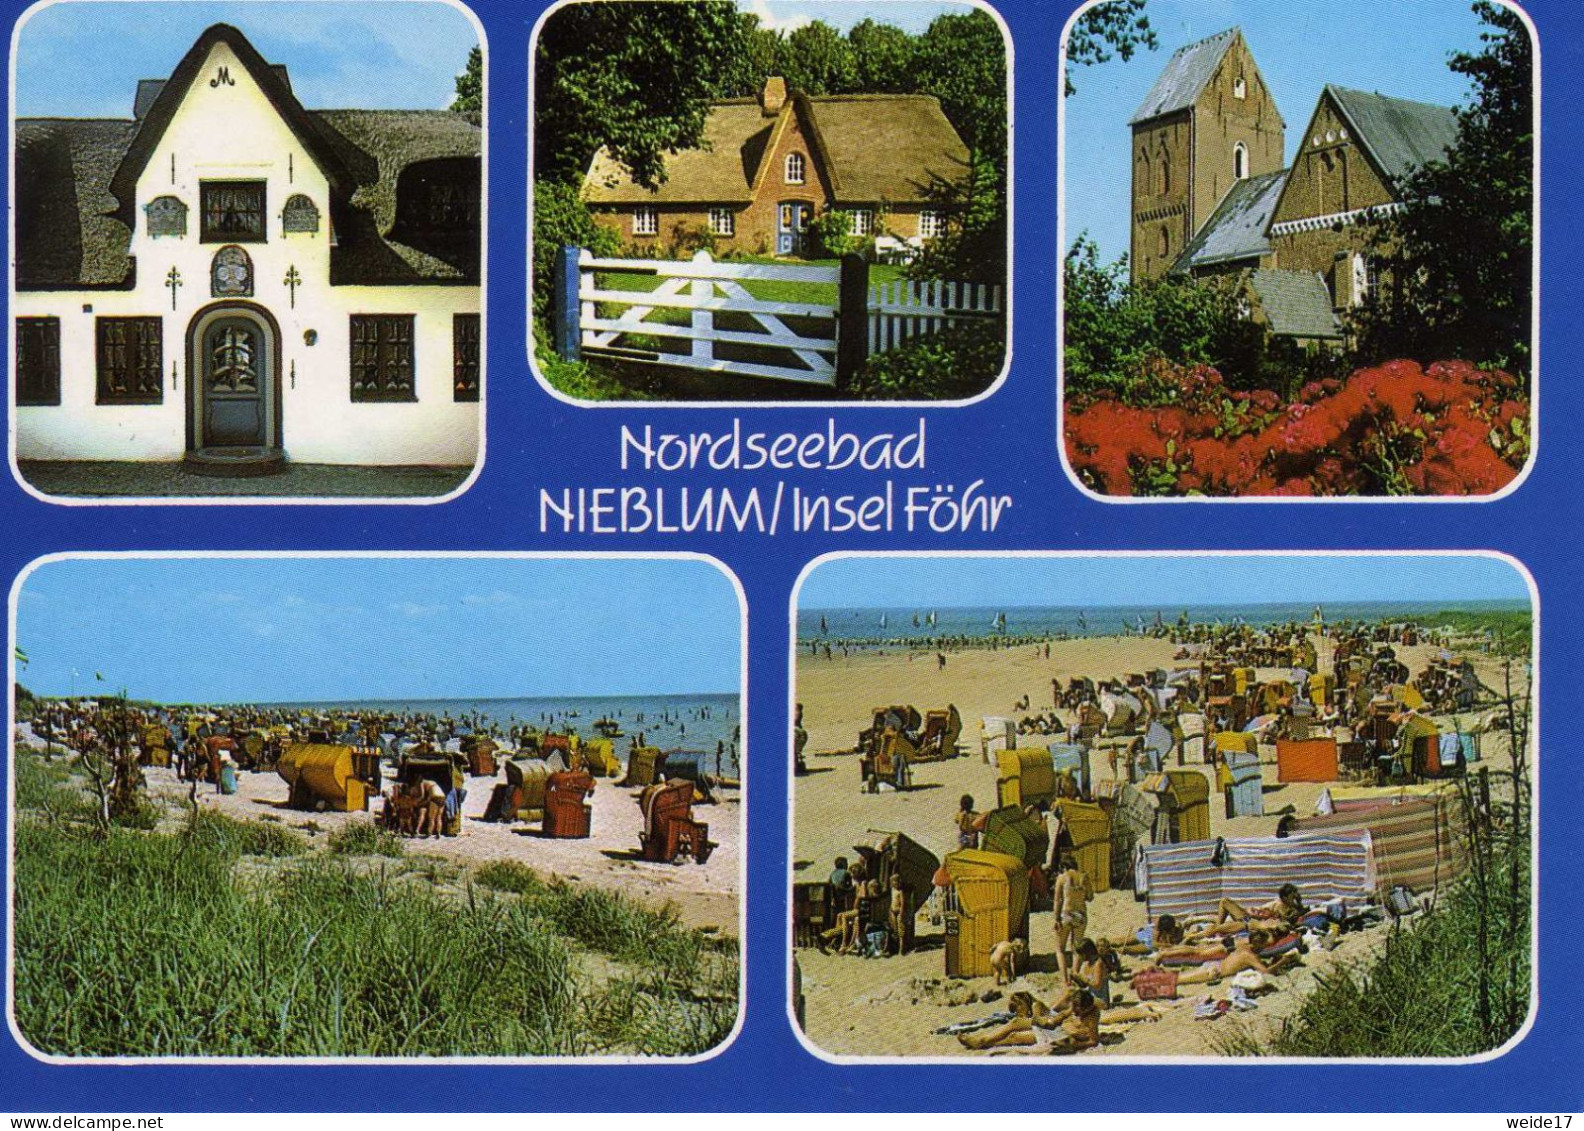 05140 - Nordseebad NIEBLUM Auf Föhr - MBK Mit Friesenhäusern, Strand Und Kirche - Föhr